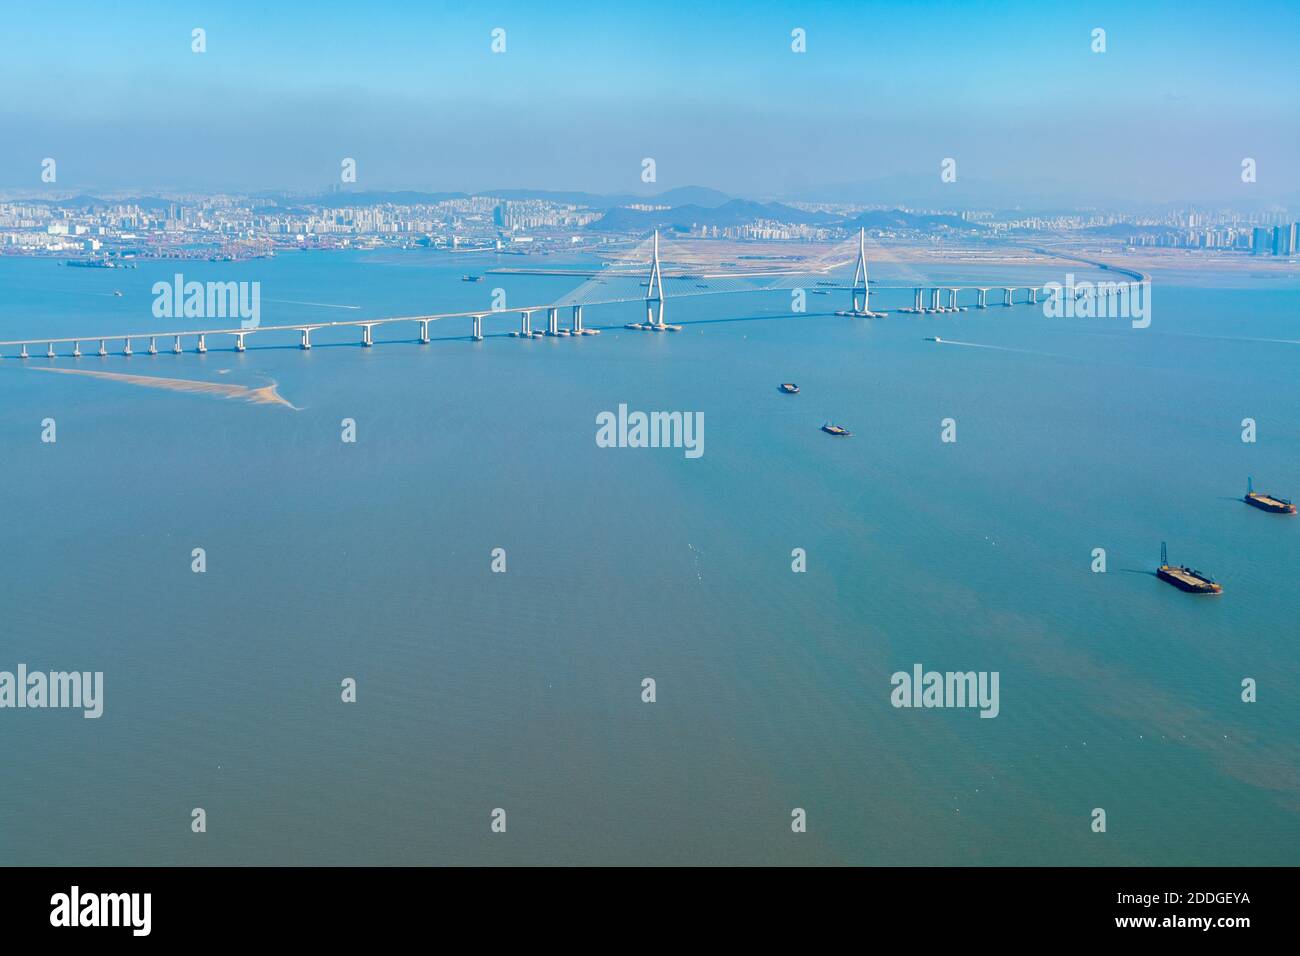 Vista aérea del puente Incheon desde una ventana de avión, que conecta el continente y la isla del aeropuerto. Foto de stock